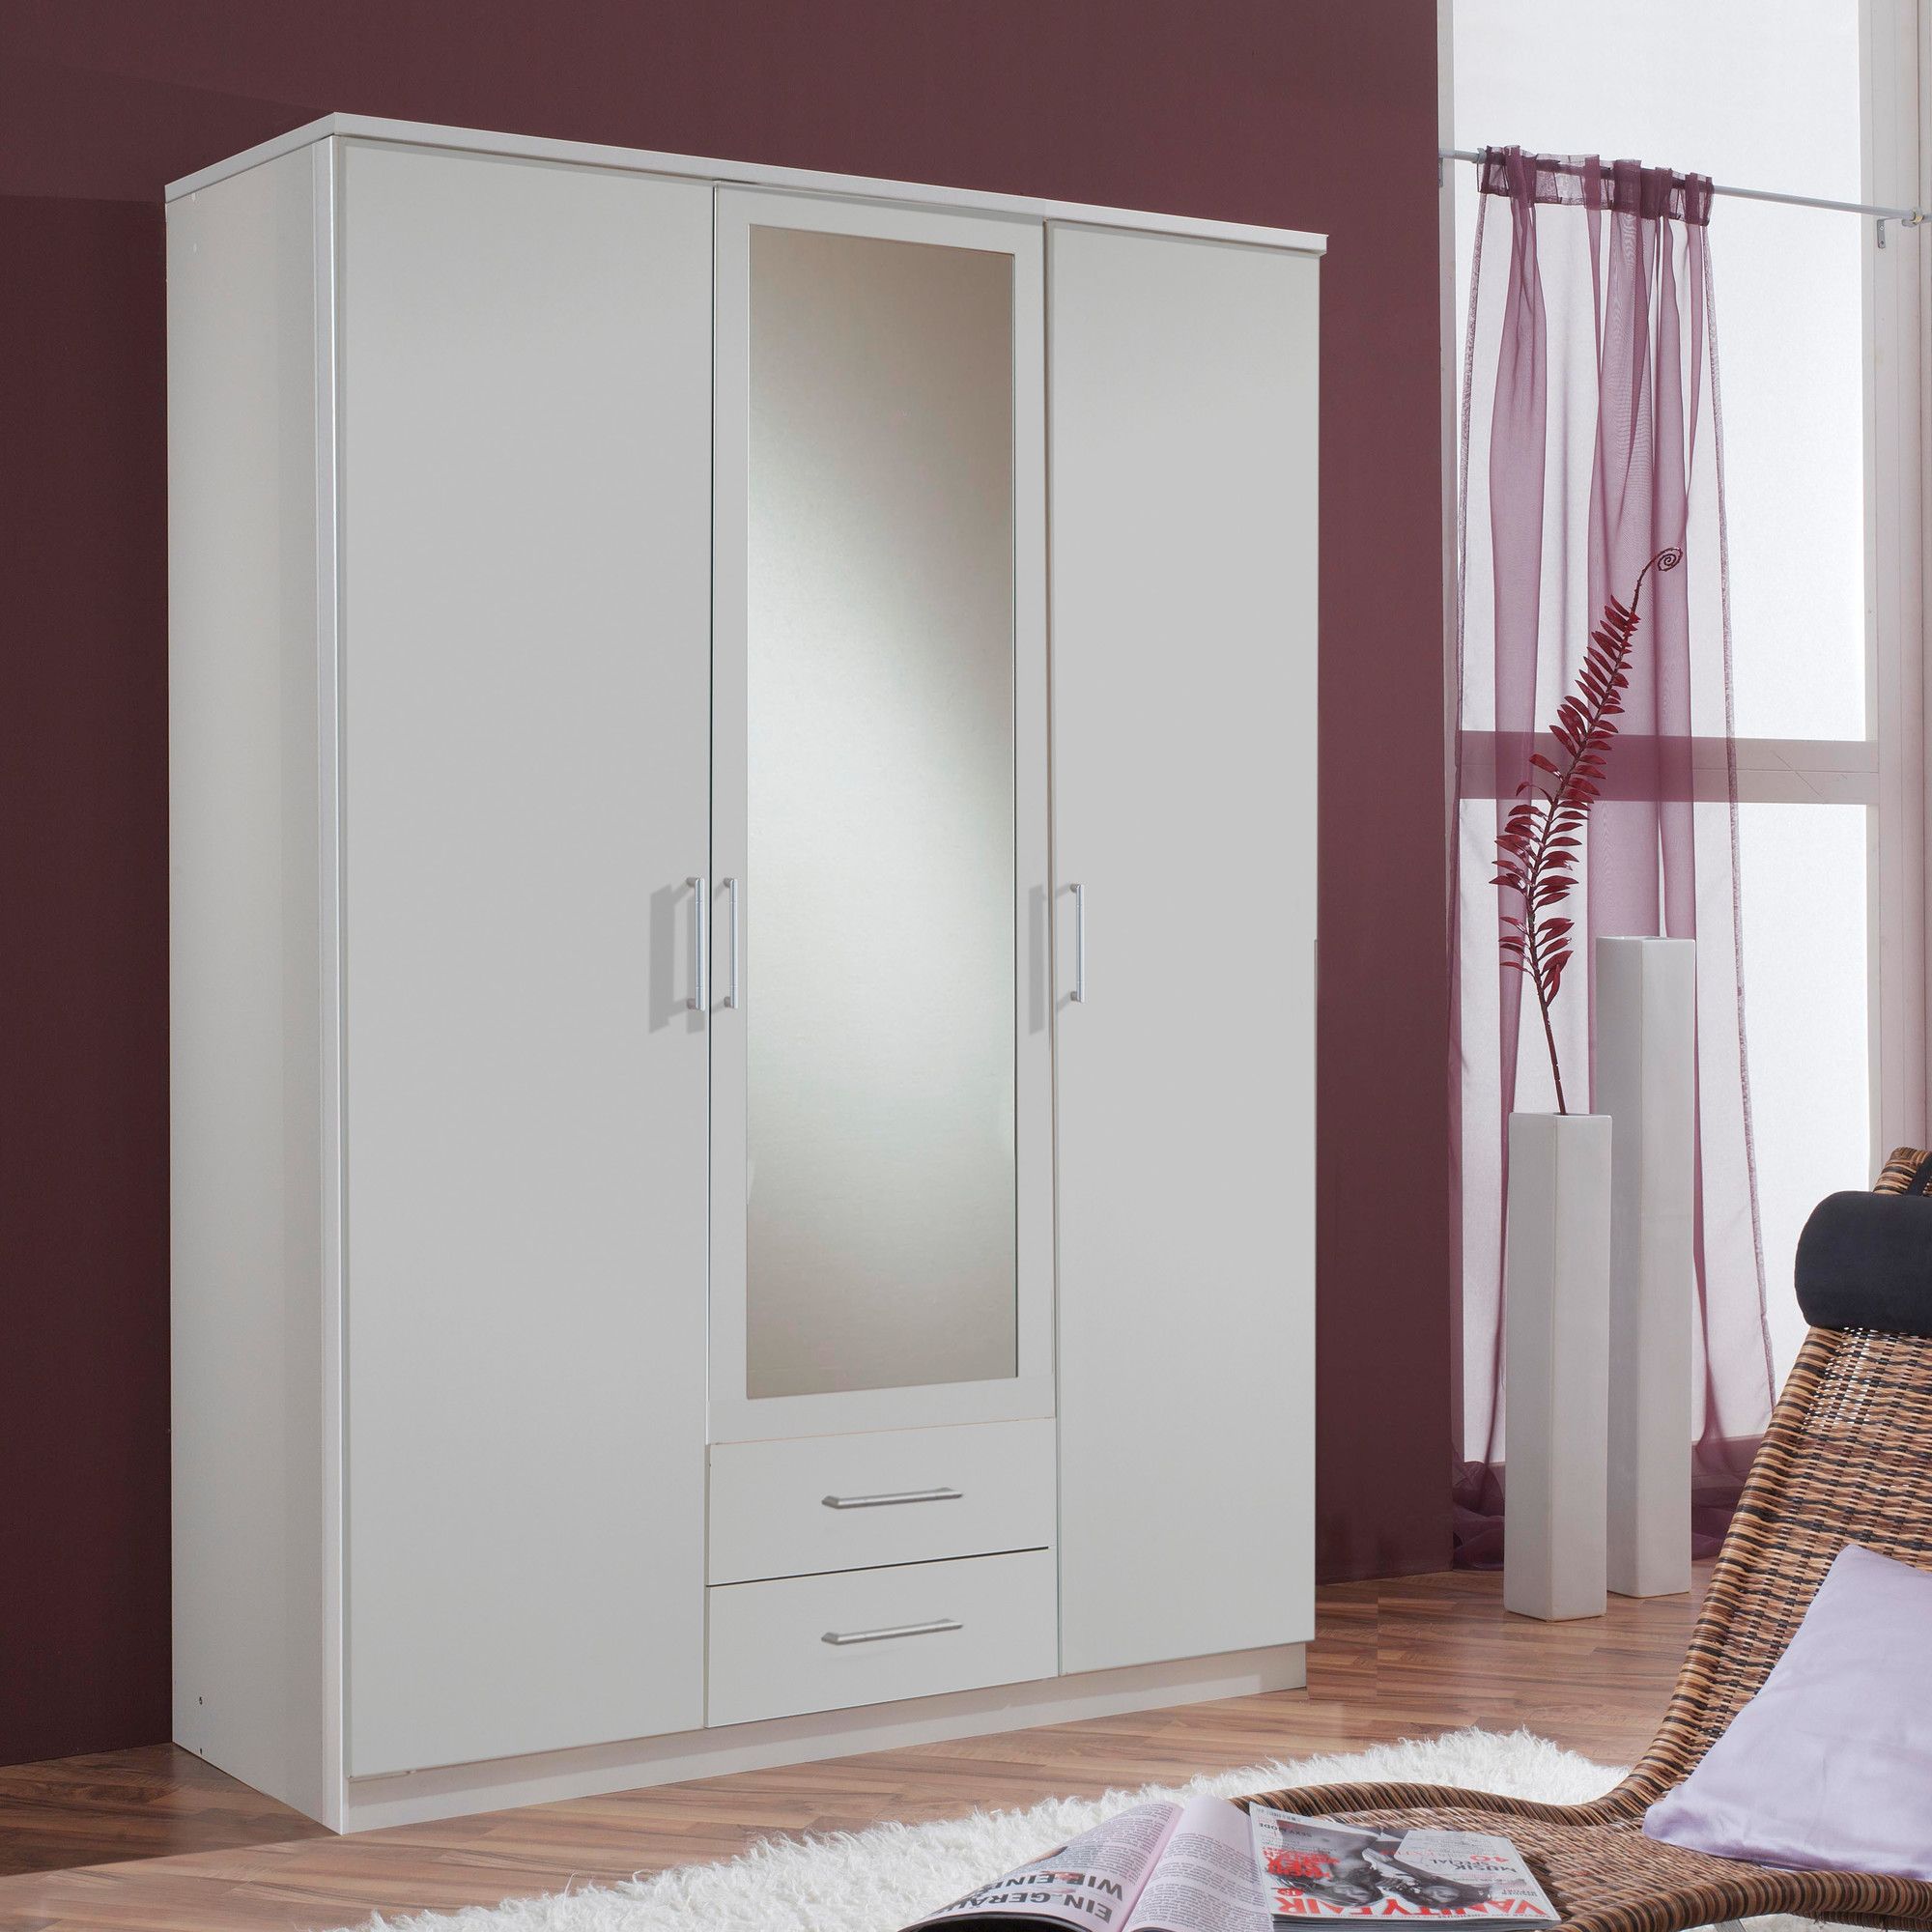 Amos Mann furniture Venice 3 Door 2 Drawer Wardrobe - White at Tesco Direct